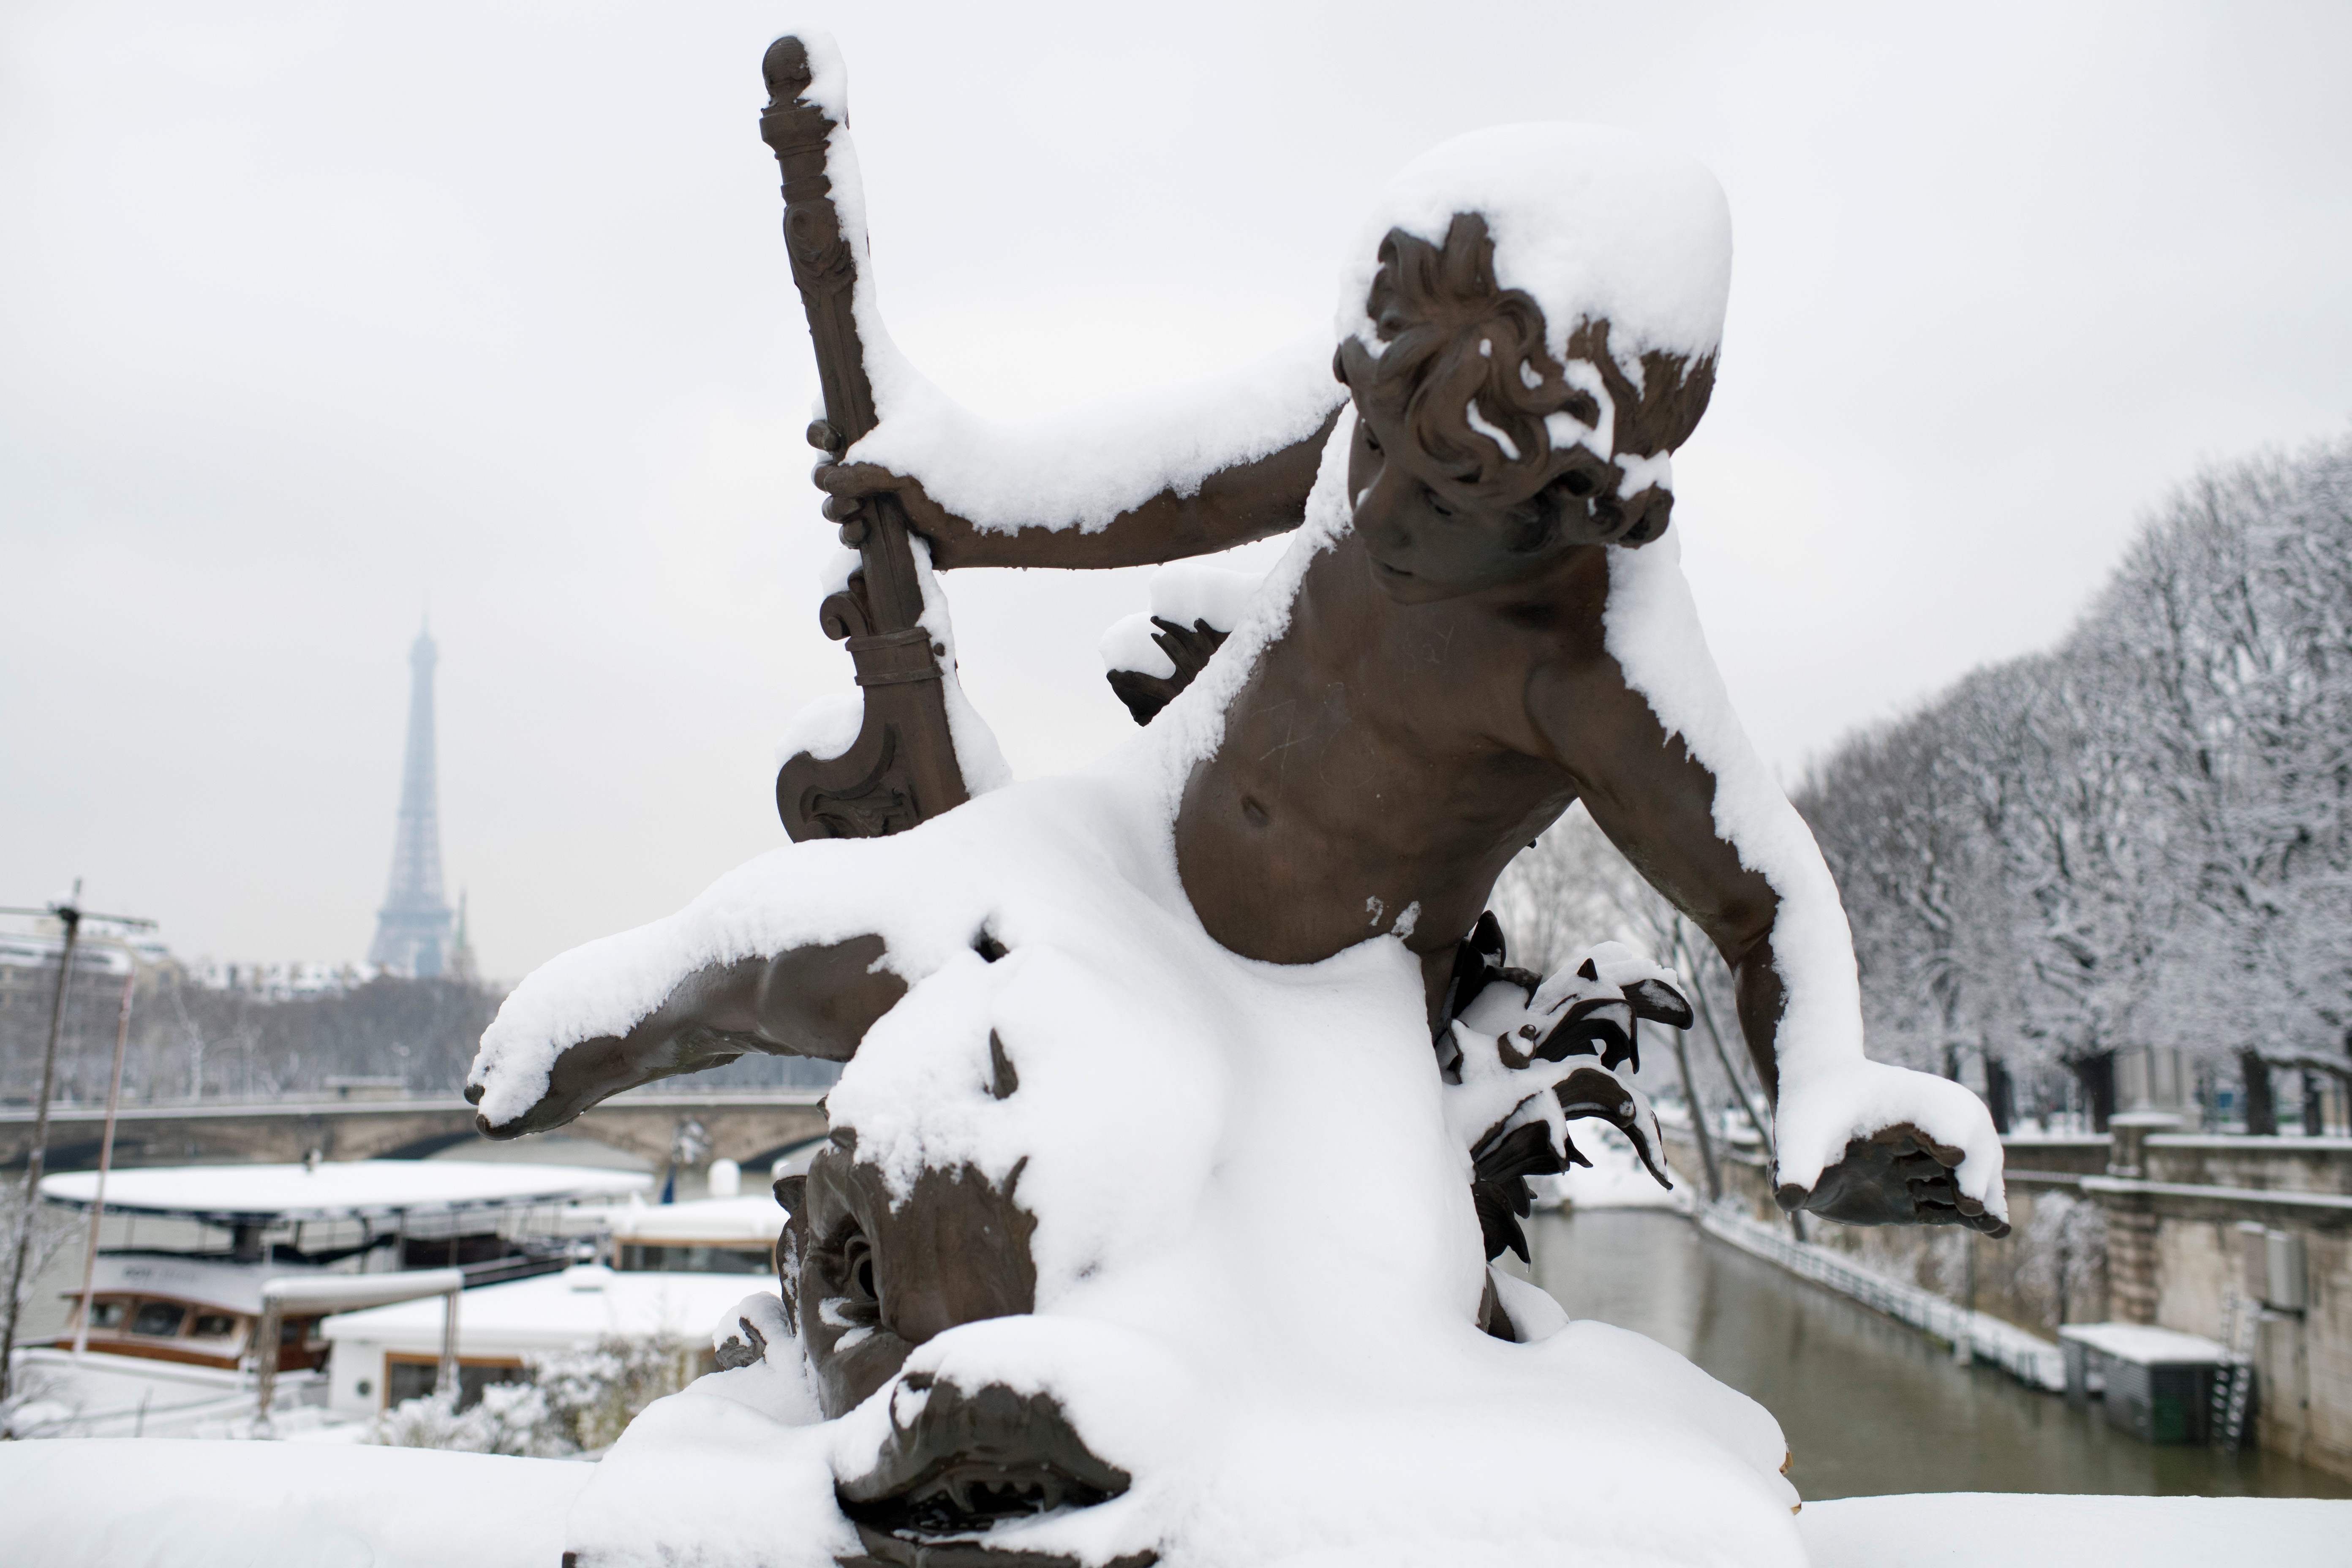 الثلج يغطى تمثال فى أحد شوارع باريس